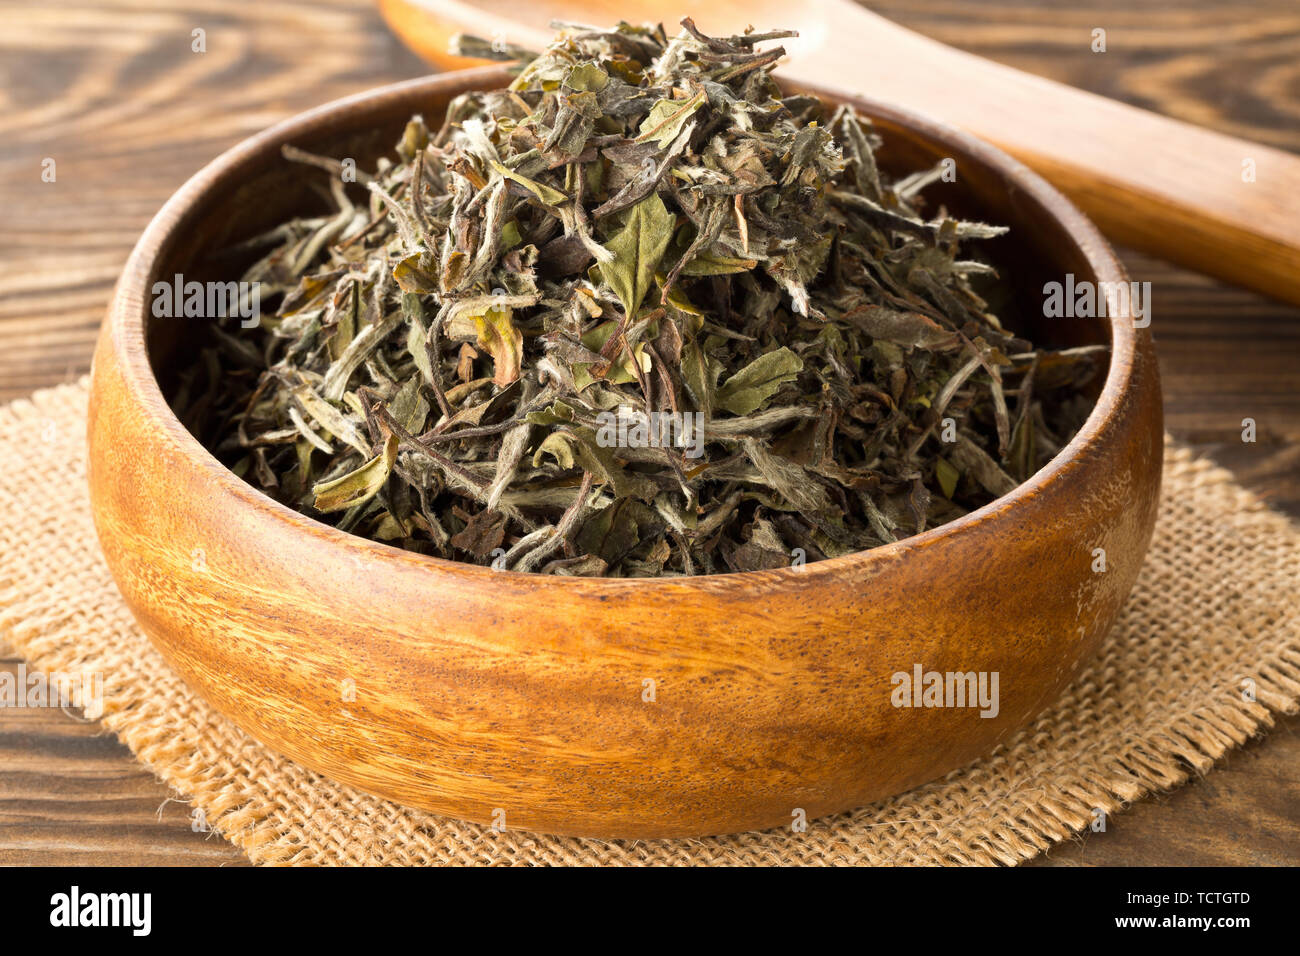 Haufen von getrockneten Rohstoffen, weisser Tee Blätter in Houten auf Bambus matte Hintergrund Stockfoto